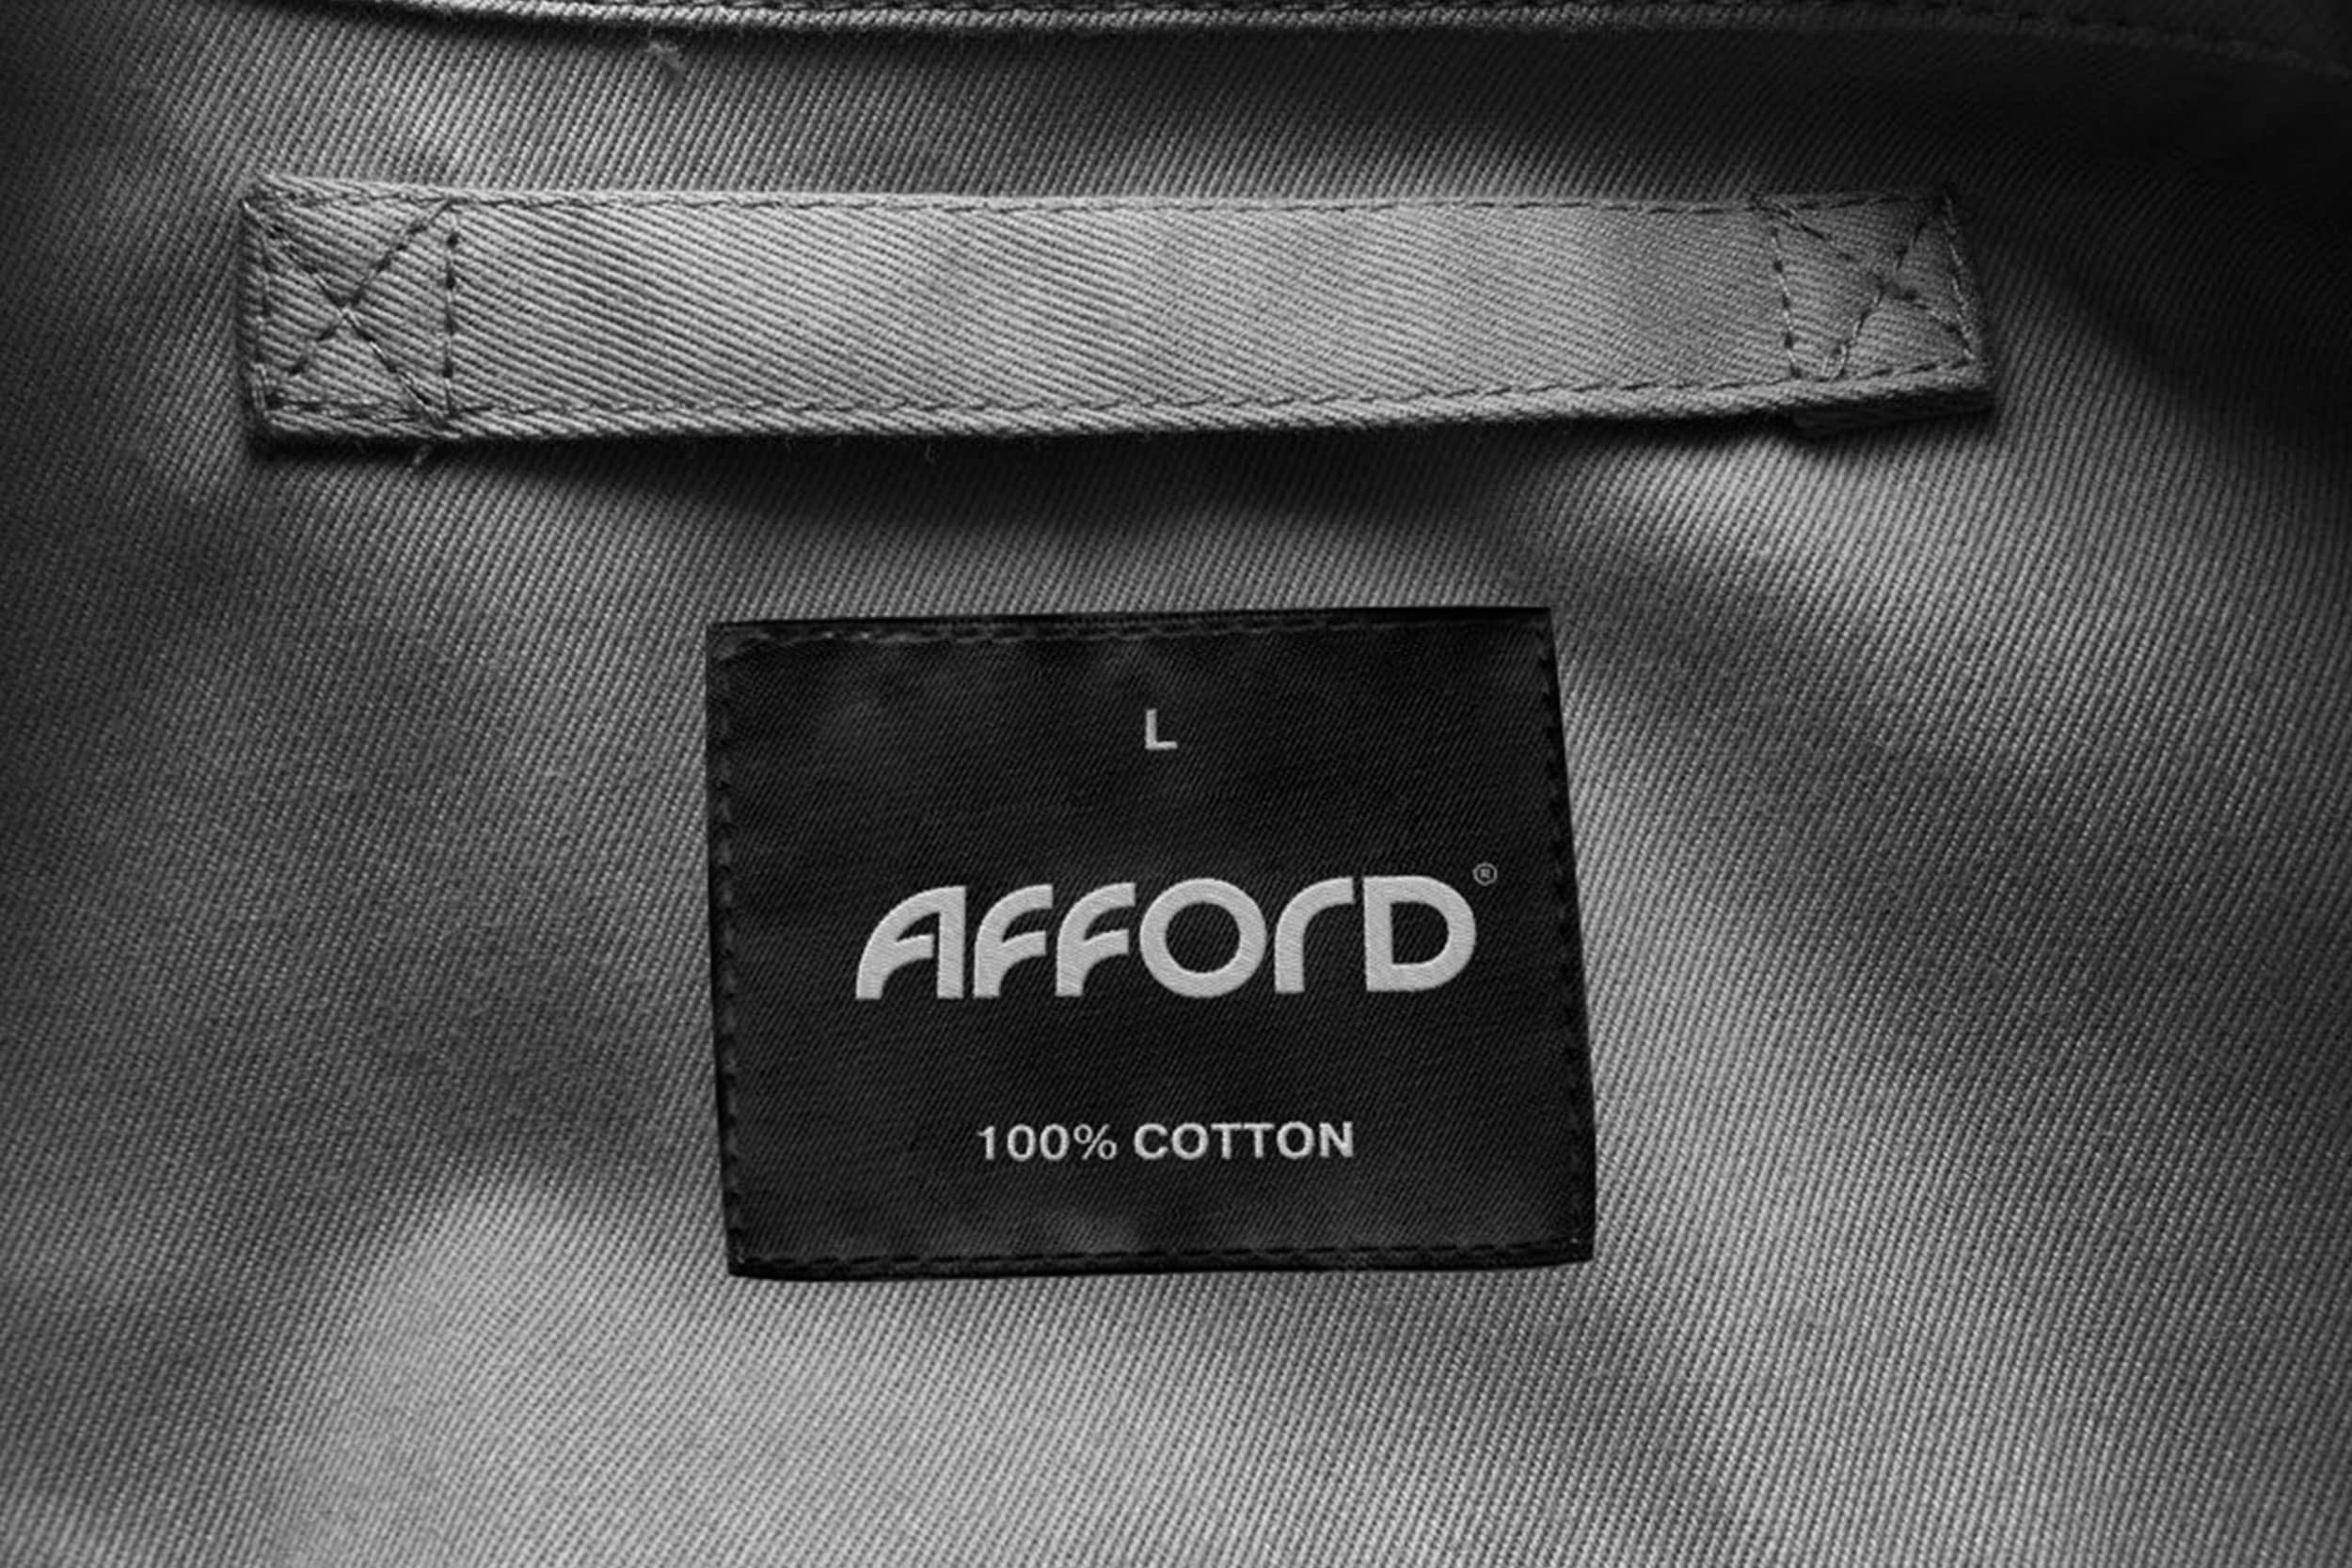 Брендинг Afford – одежда для всей семьи